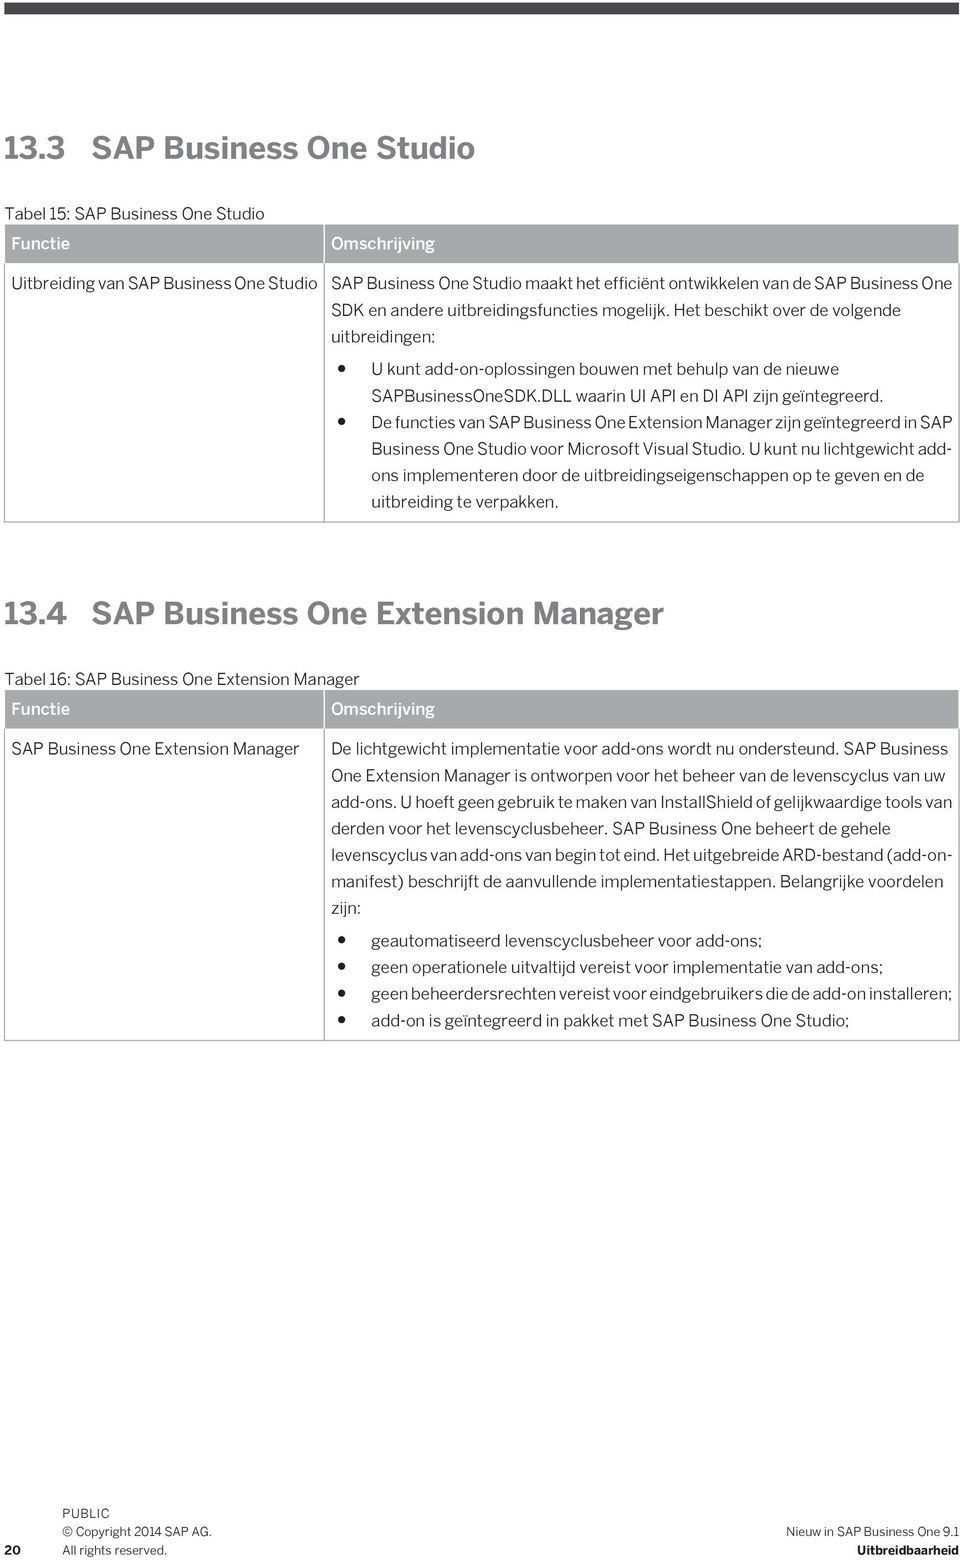 De functies van SAP Business One Extension Manager zijn geïntegreerd in SAP Business One Studio voor Microsoft Visual Studio.